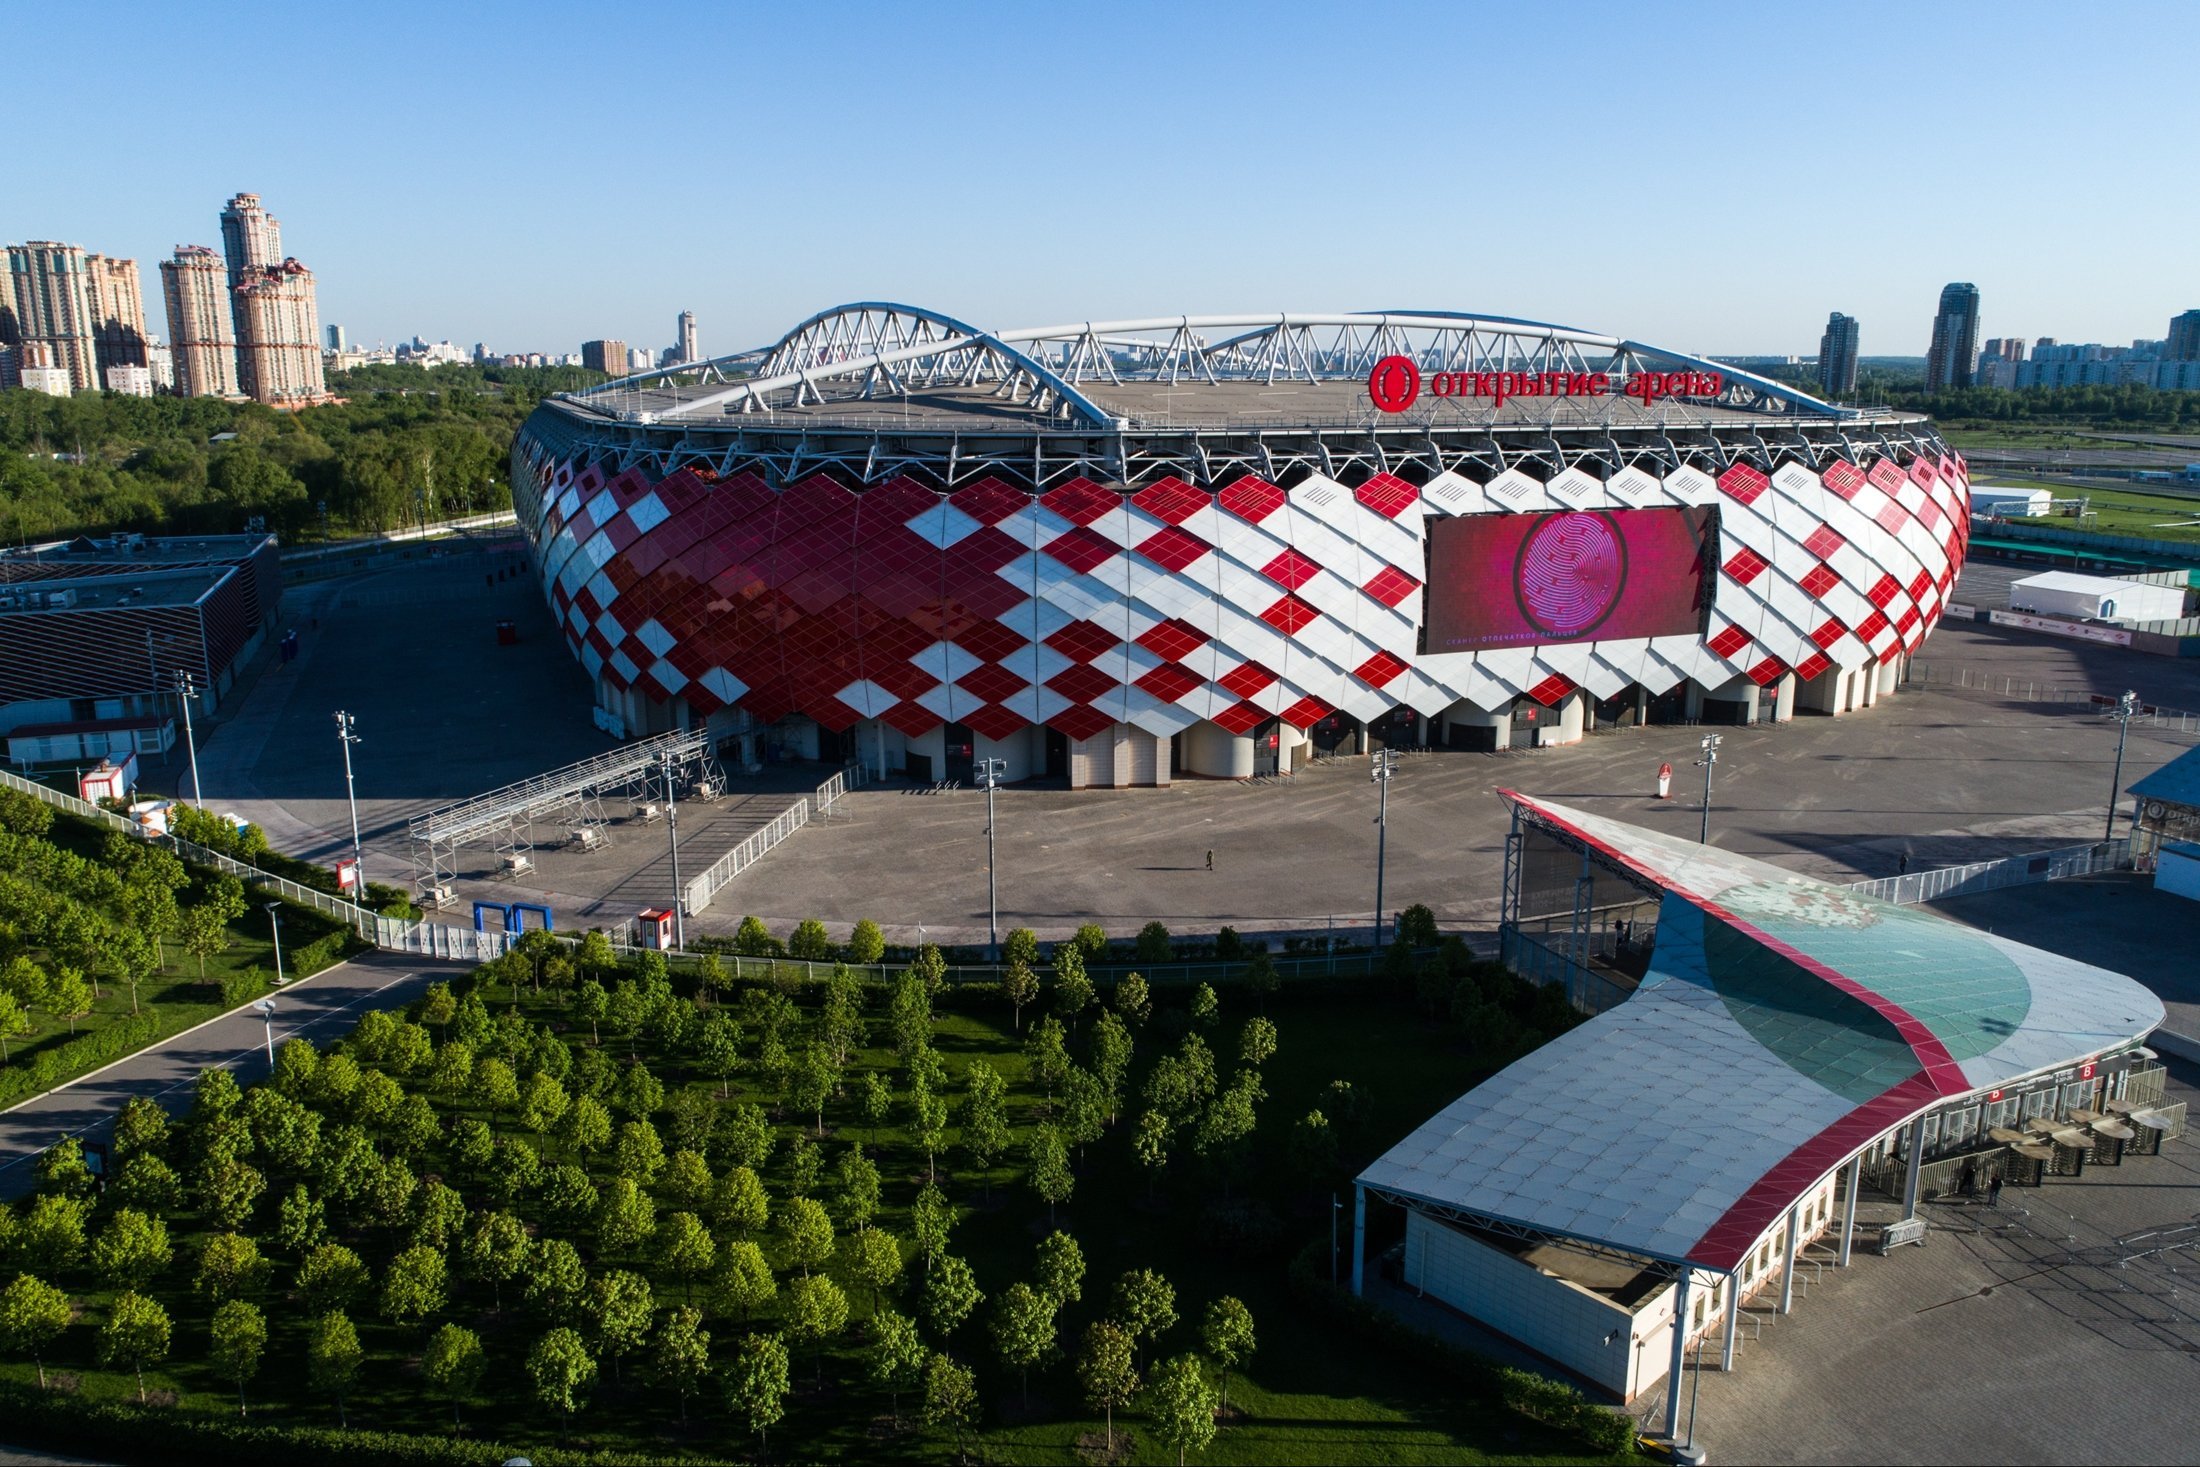 Стадион московская область